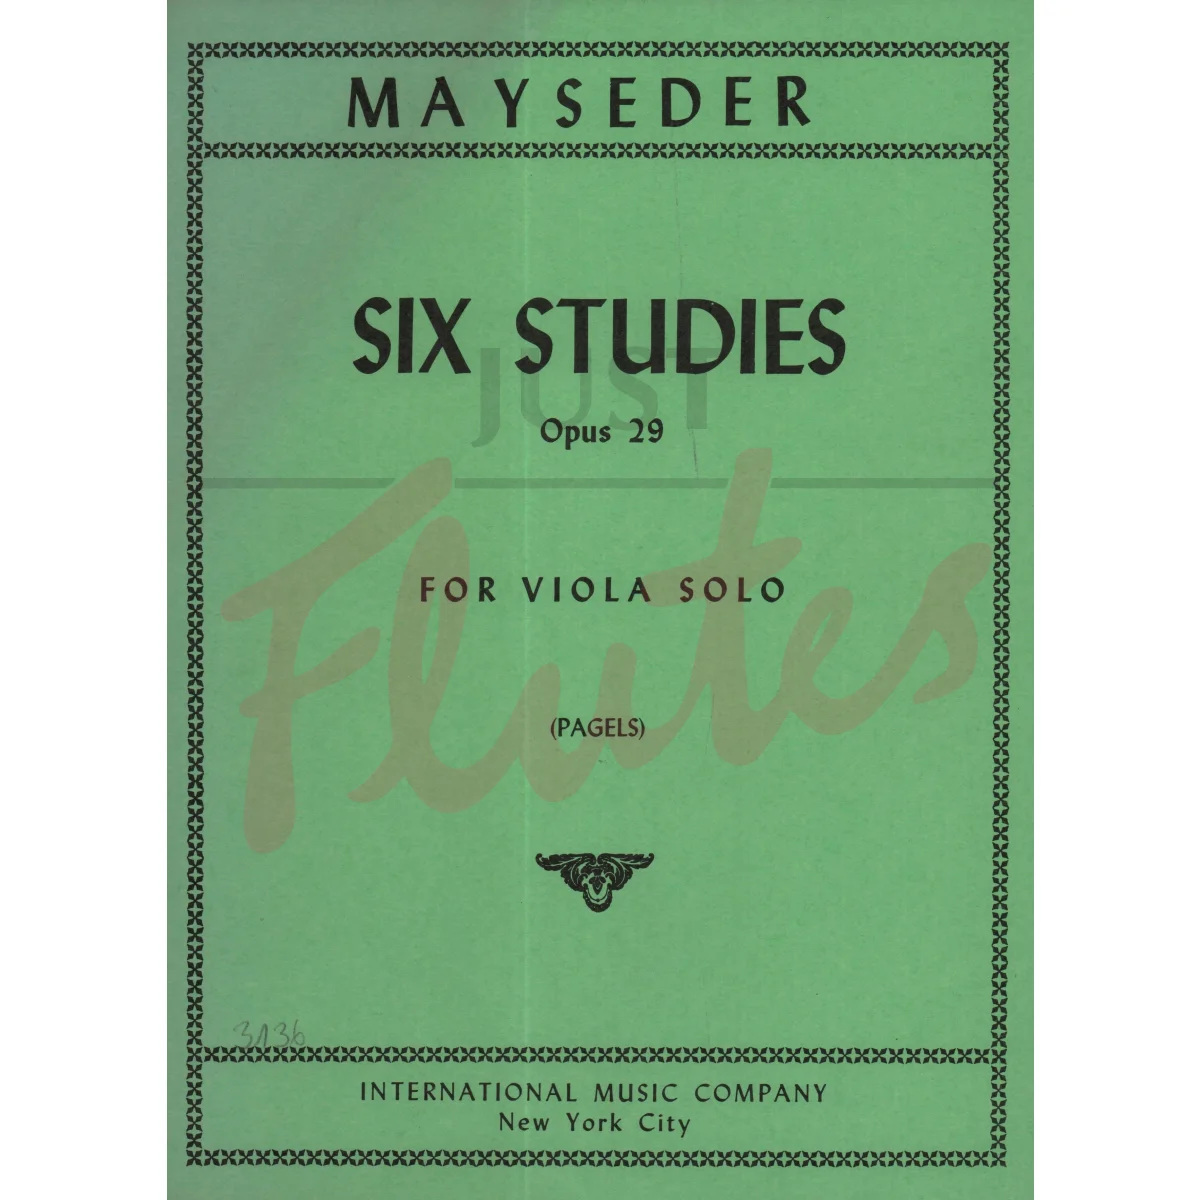 Six Studies for Viola